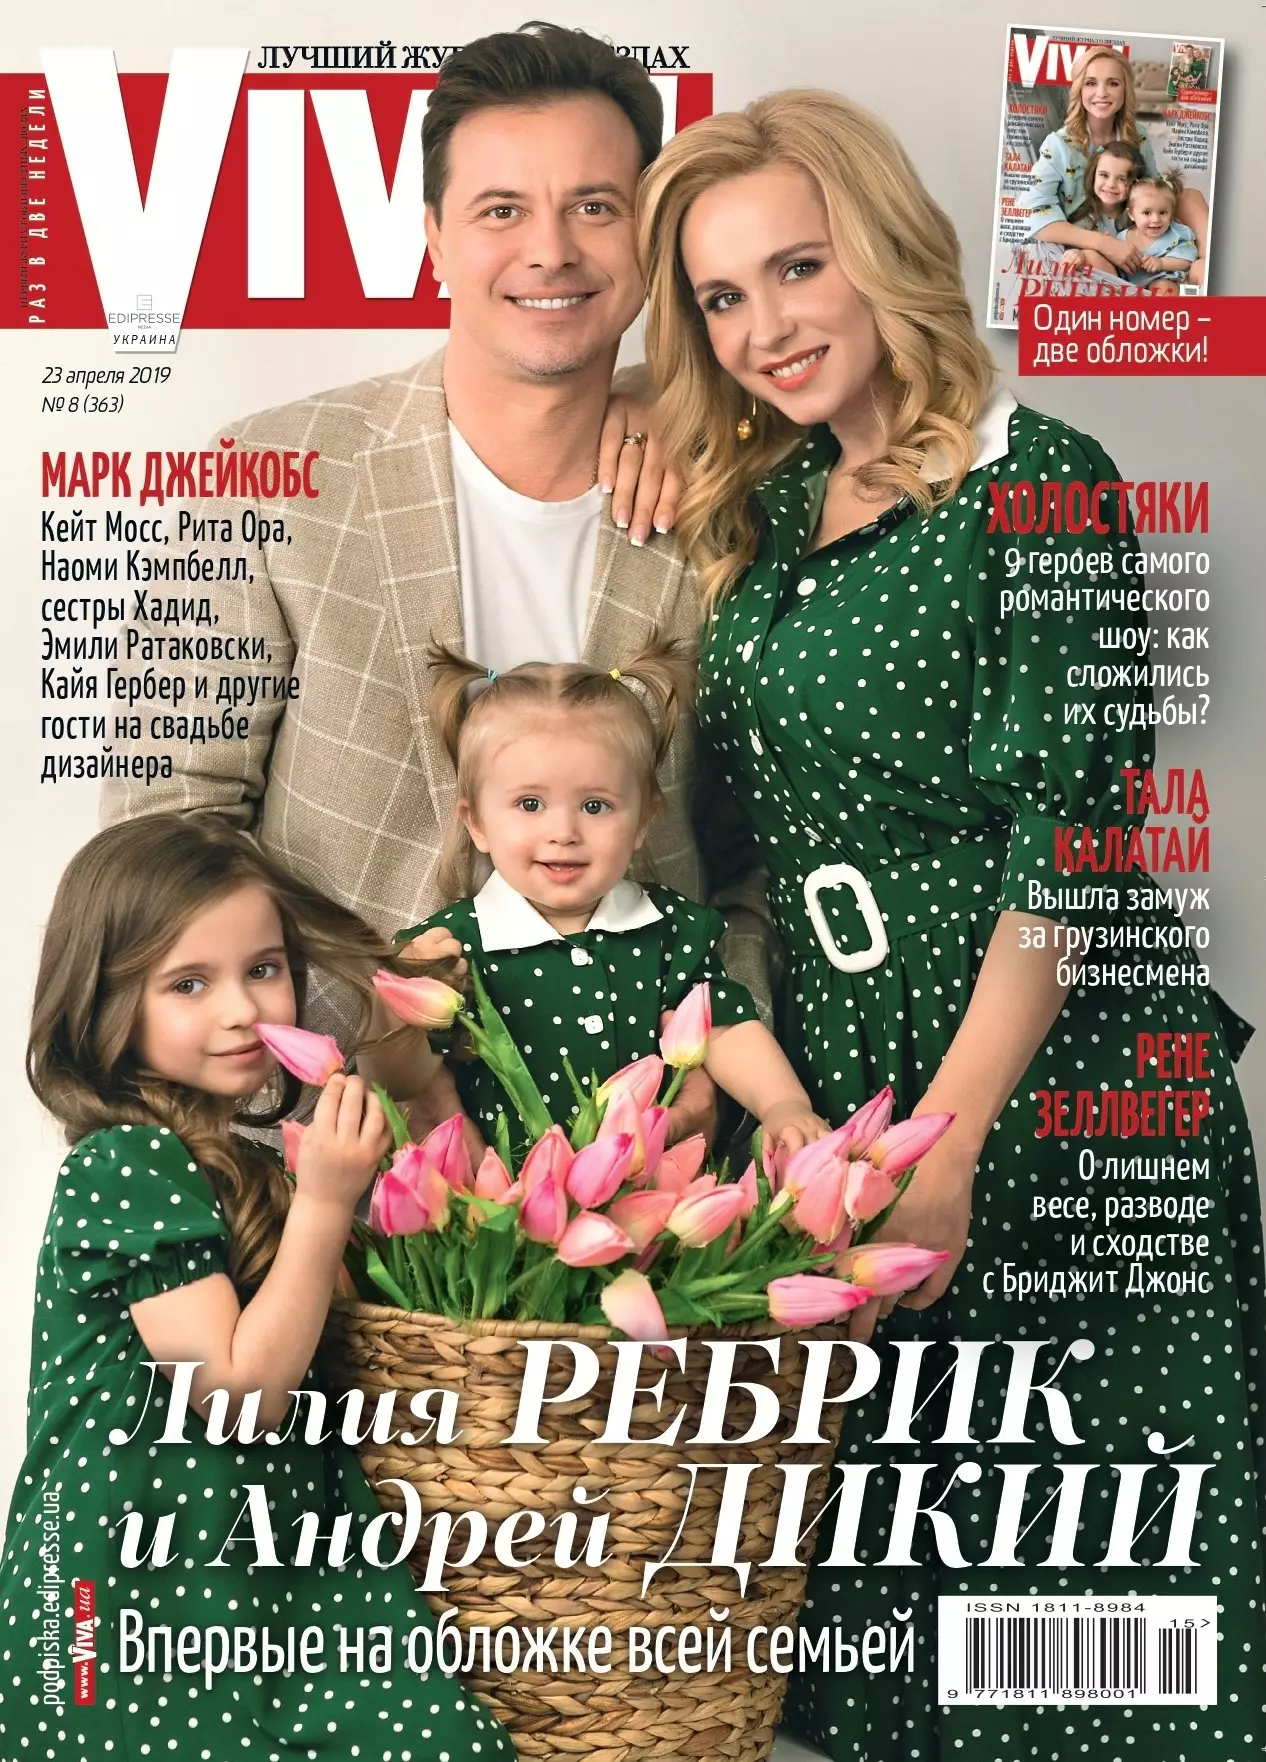 Лилия Ребрик с мужем Андреем Диким и дочерьми Дианой и Полиной